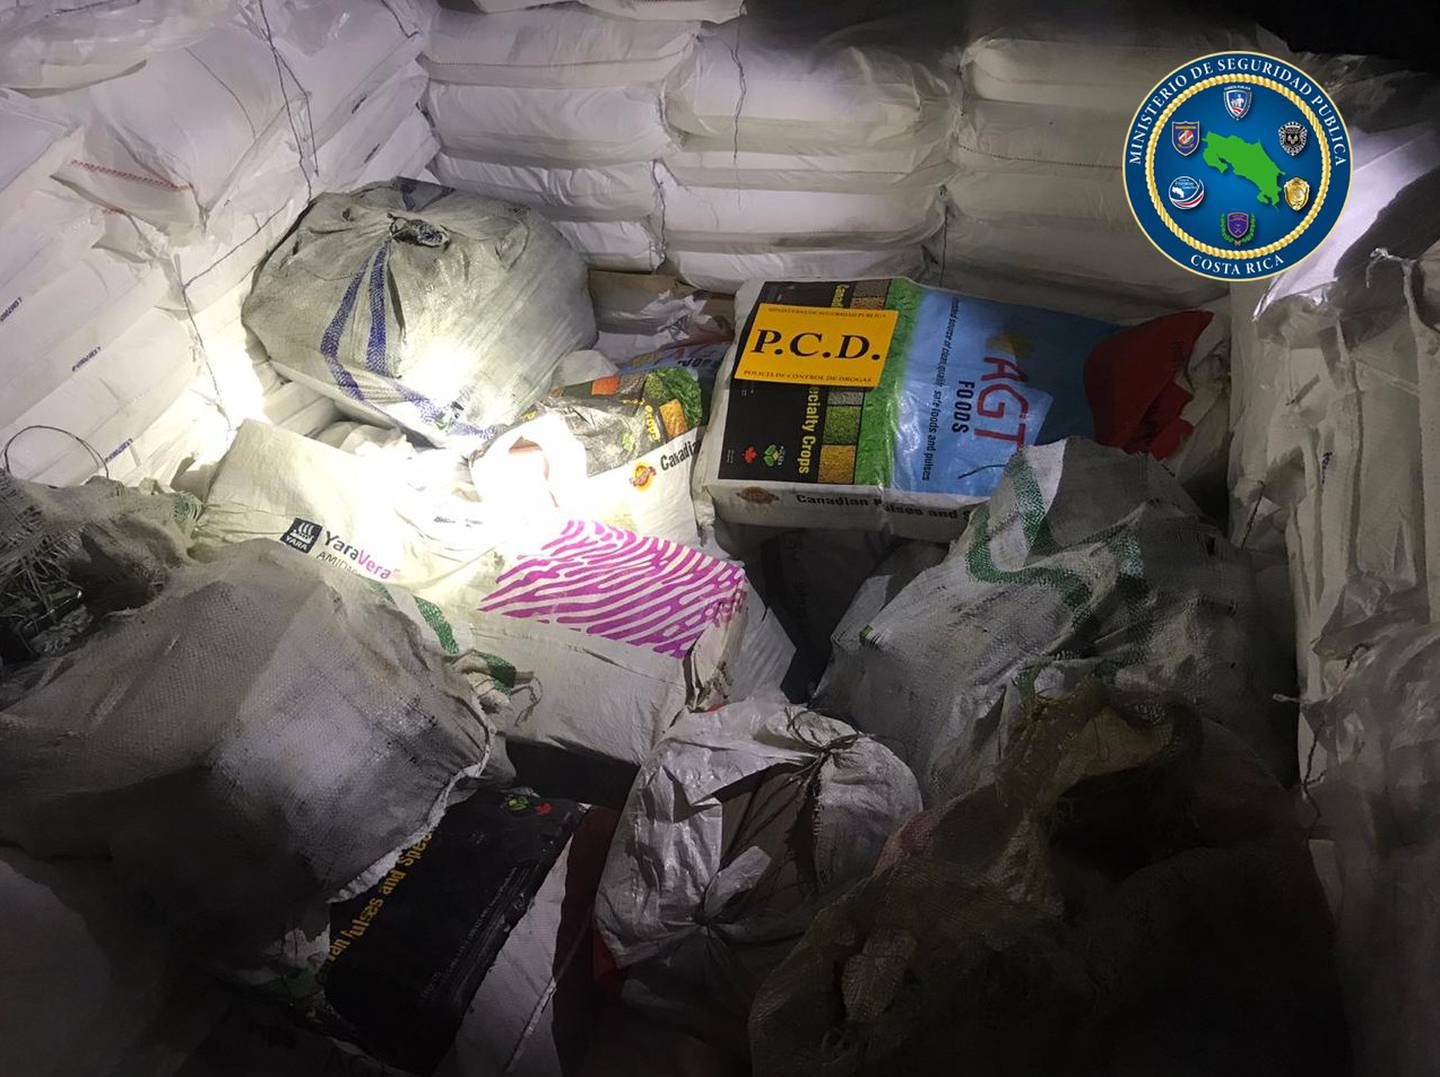 En medio de sacos blancos con sal refinada, los agentes de la PCD dieron con 26 bultos donde iban 778 kilos de cocaína. Foto: MSP.